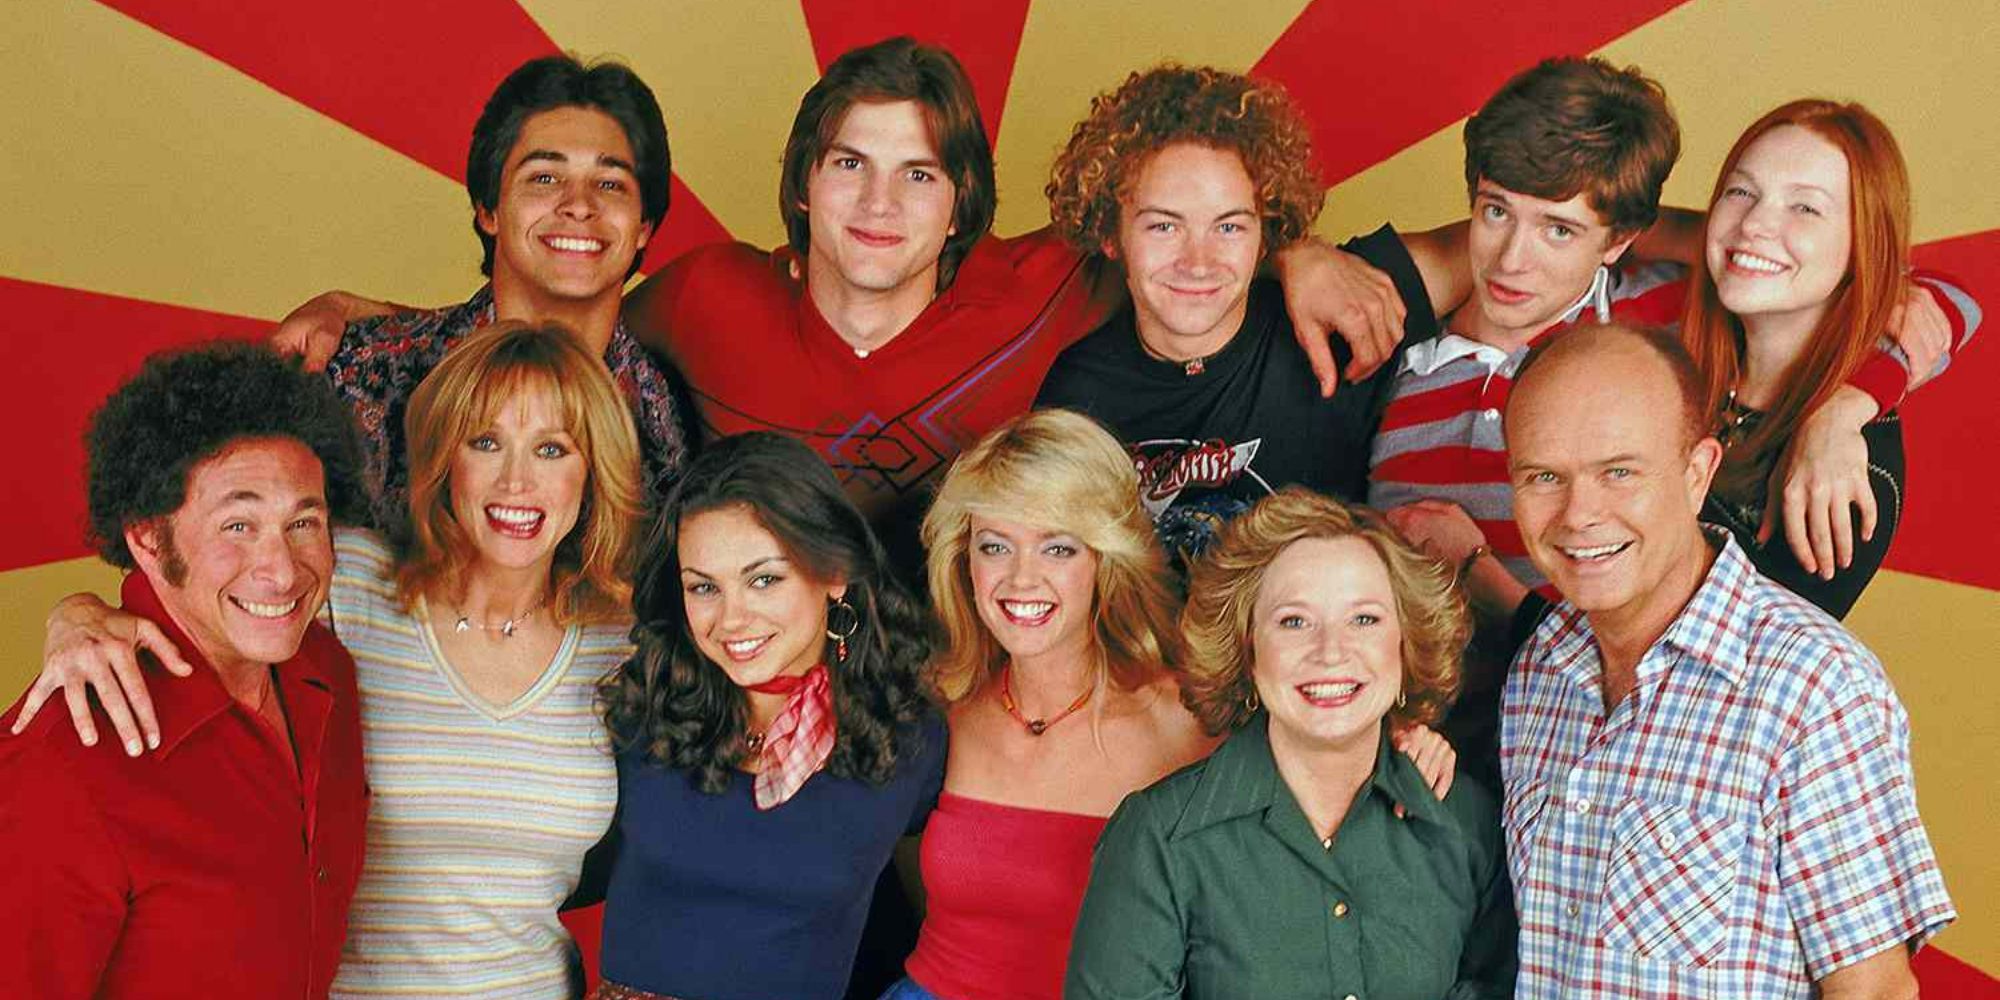 Los actores originales desaparecidos de la temporada 2 de That ’90s Show se quejan del regreso de un personaje después de 19 años peor